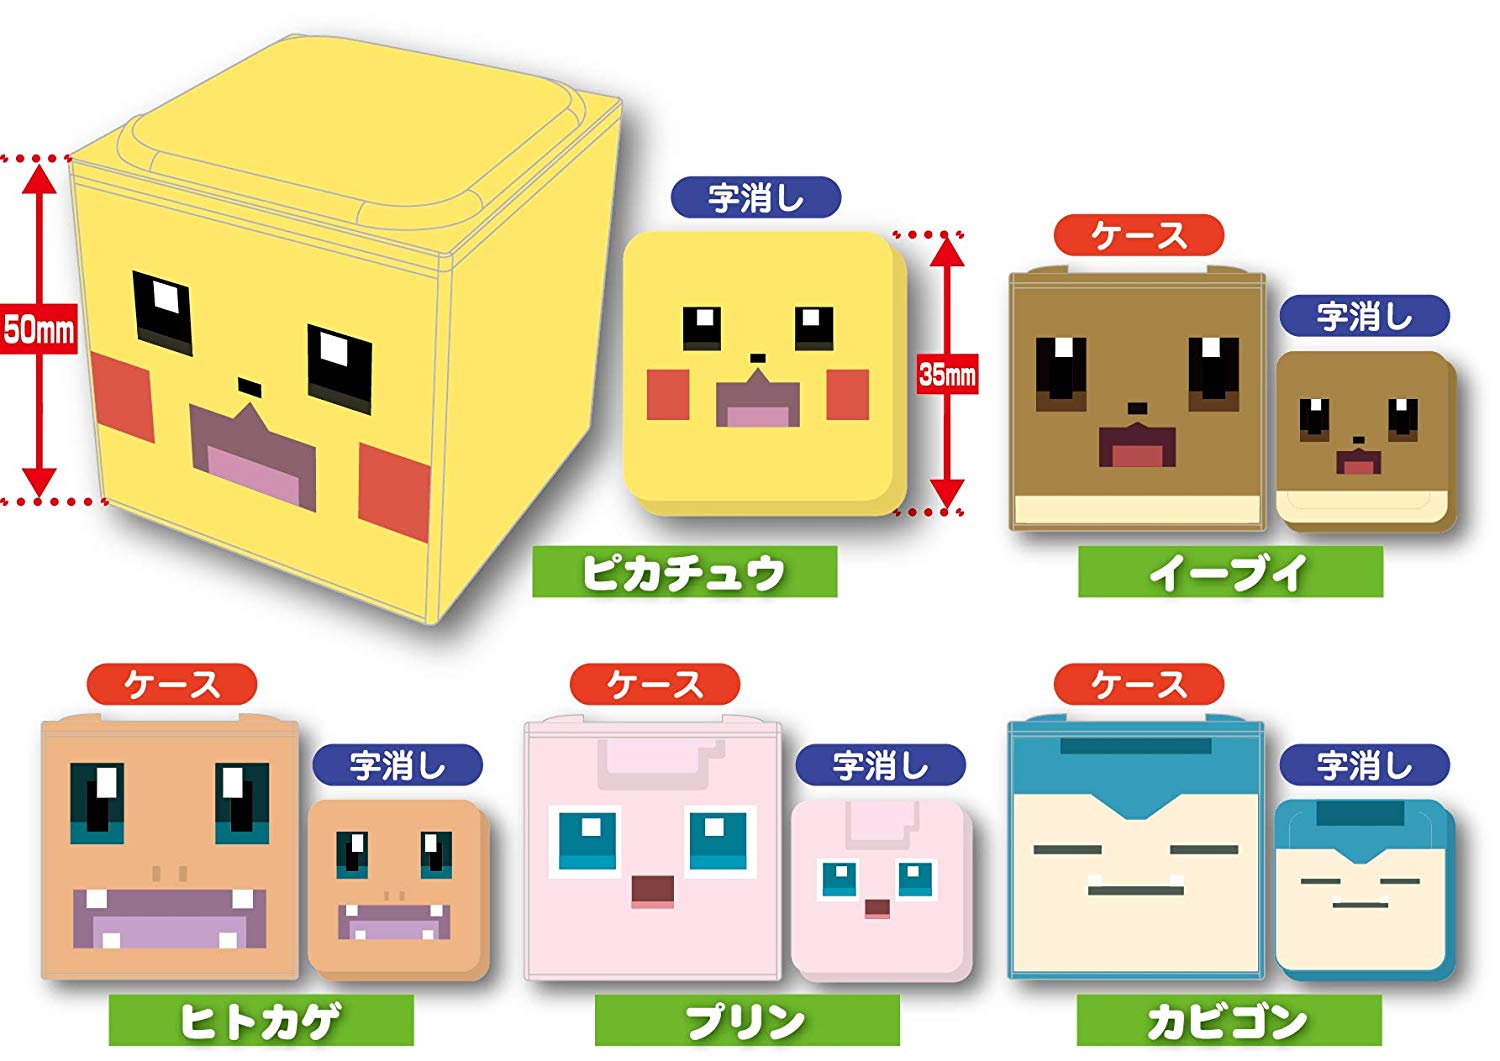 Pokemon 2018 Pokemon Quest Eevee Poxel Box With Eraser